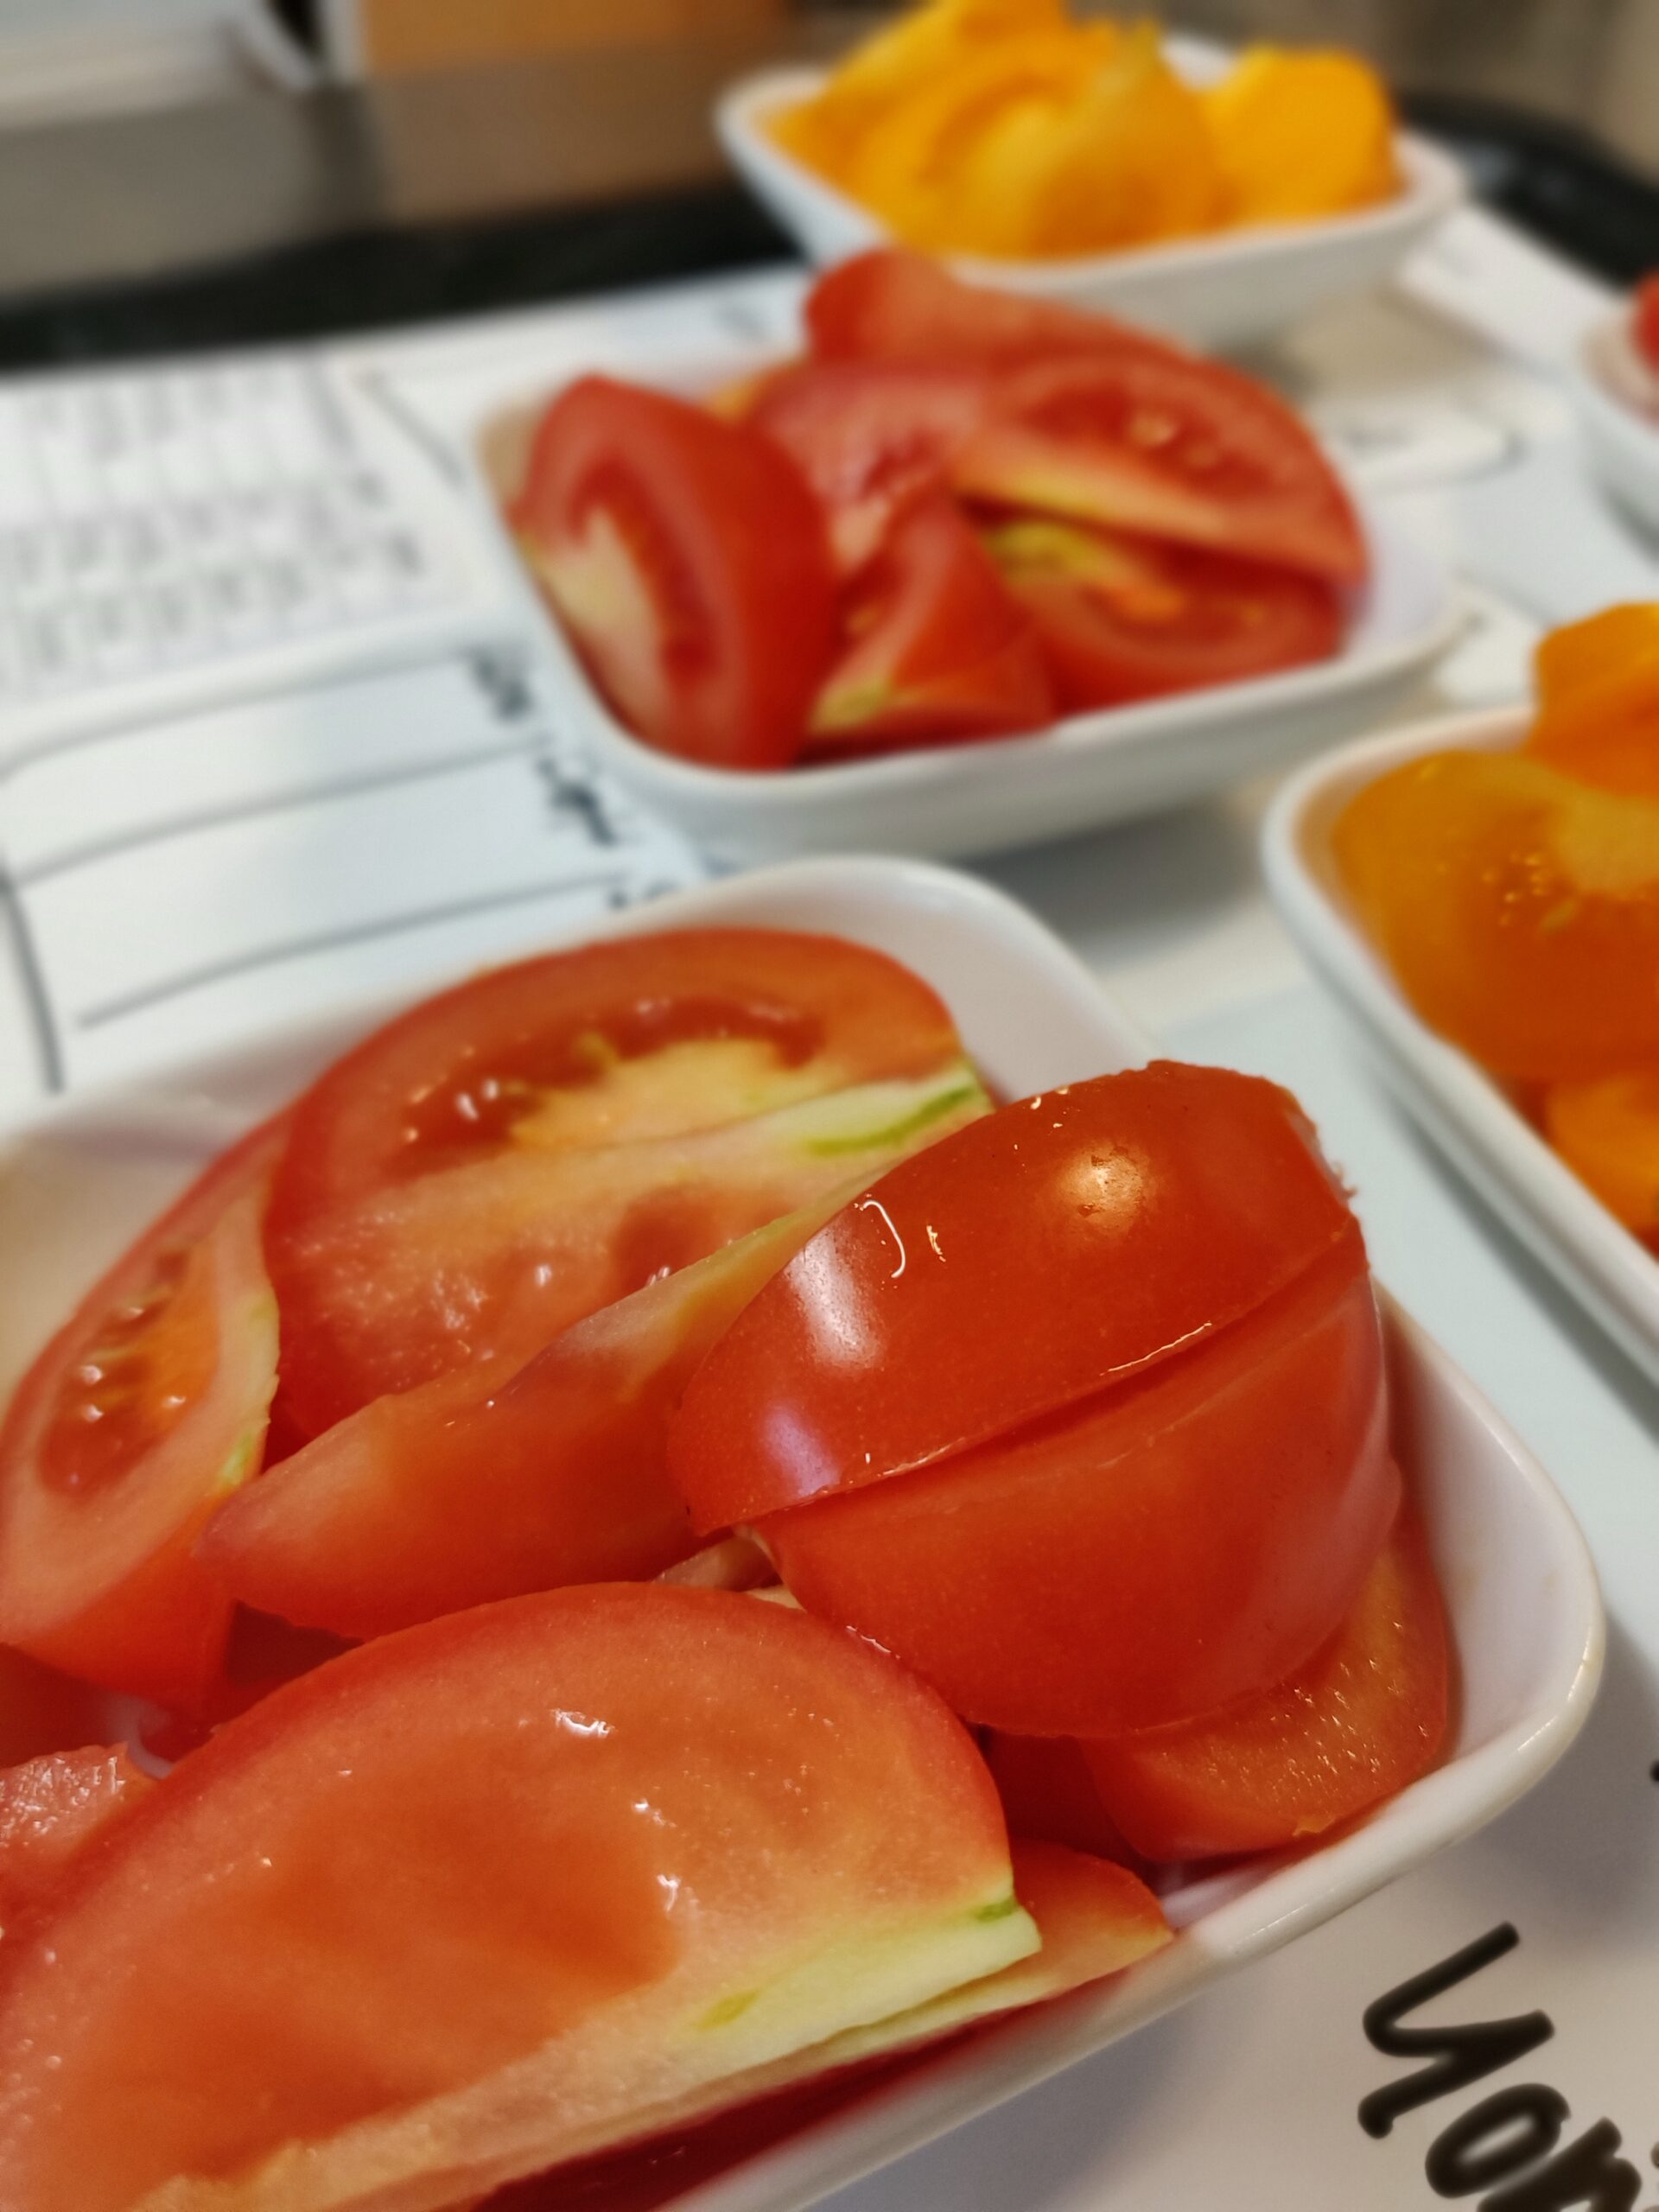 Smakmöte – tomater och äpplen